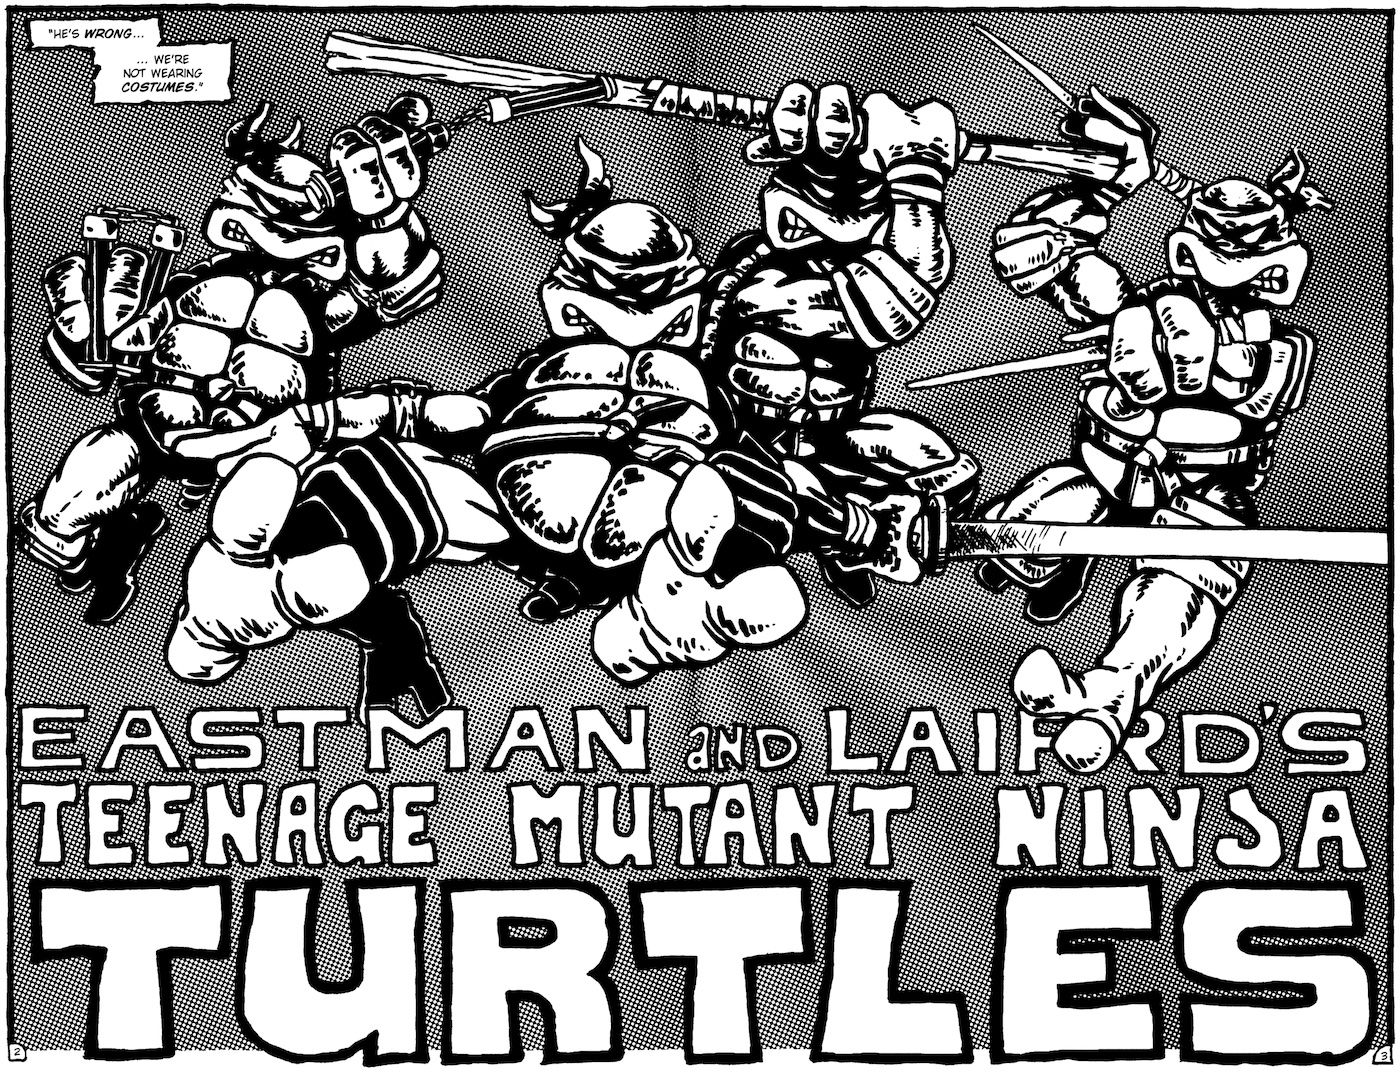 Teenage Mutant Ninja Turtles first issue